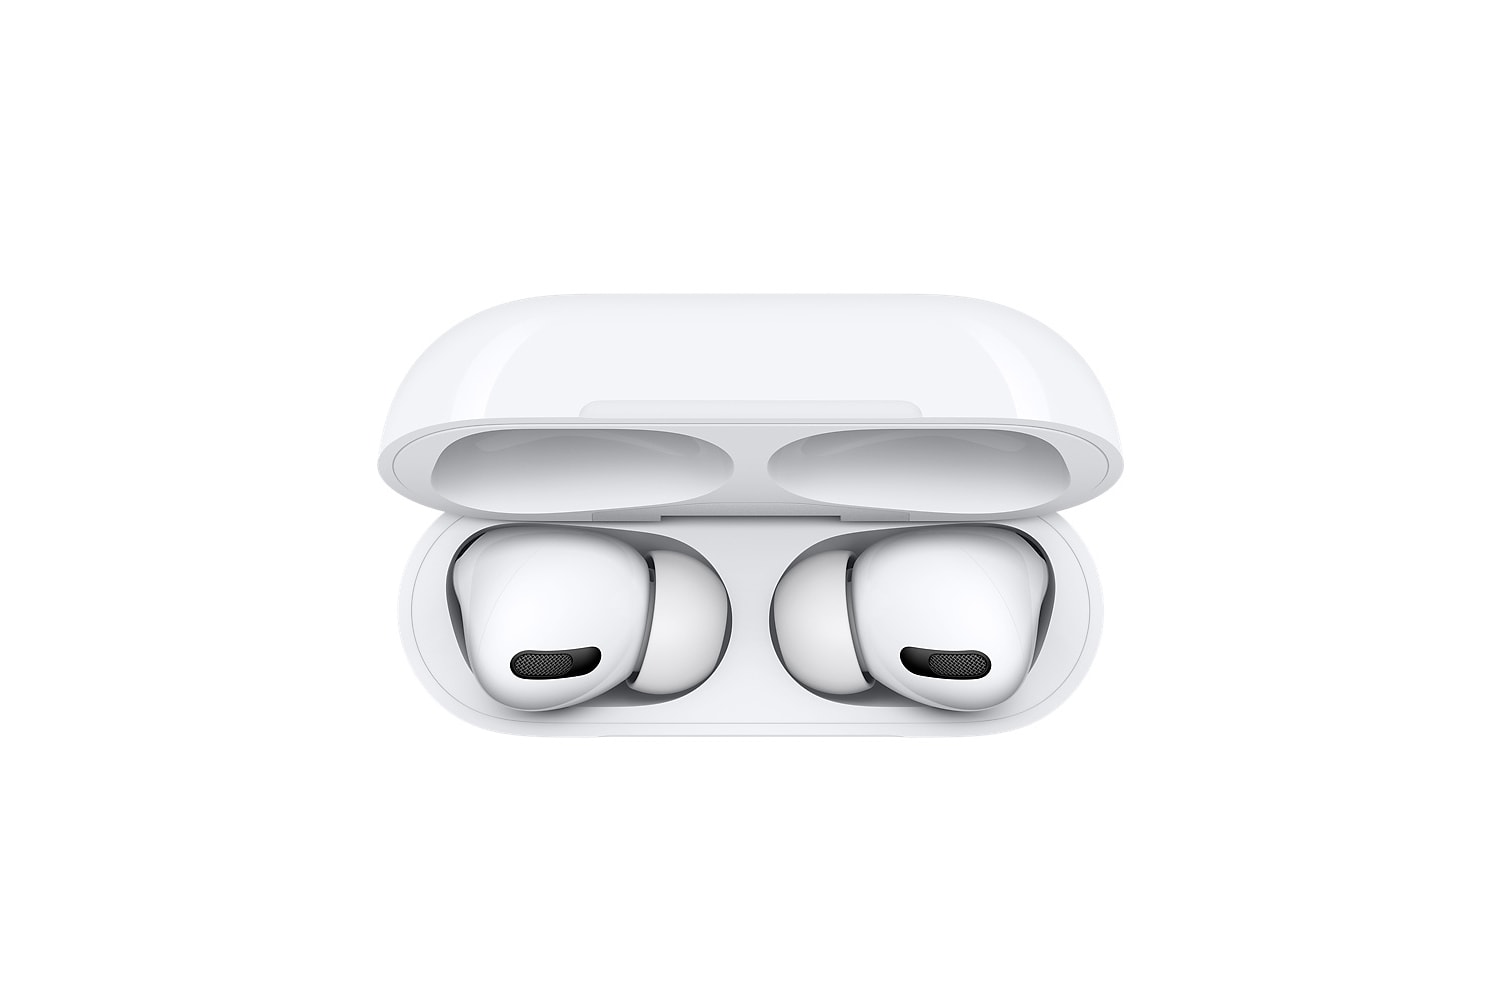 Apple 特別推出 AirPods Pro 牛年限量款